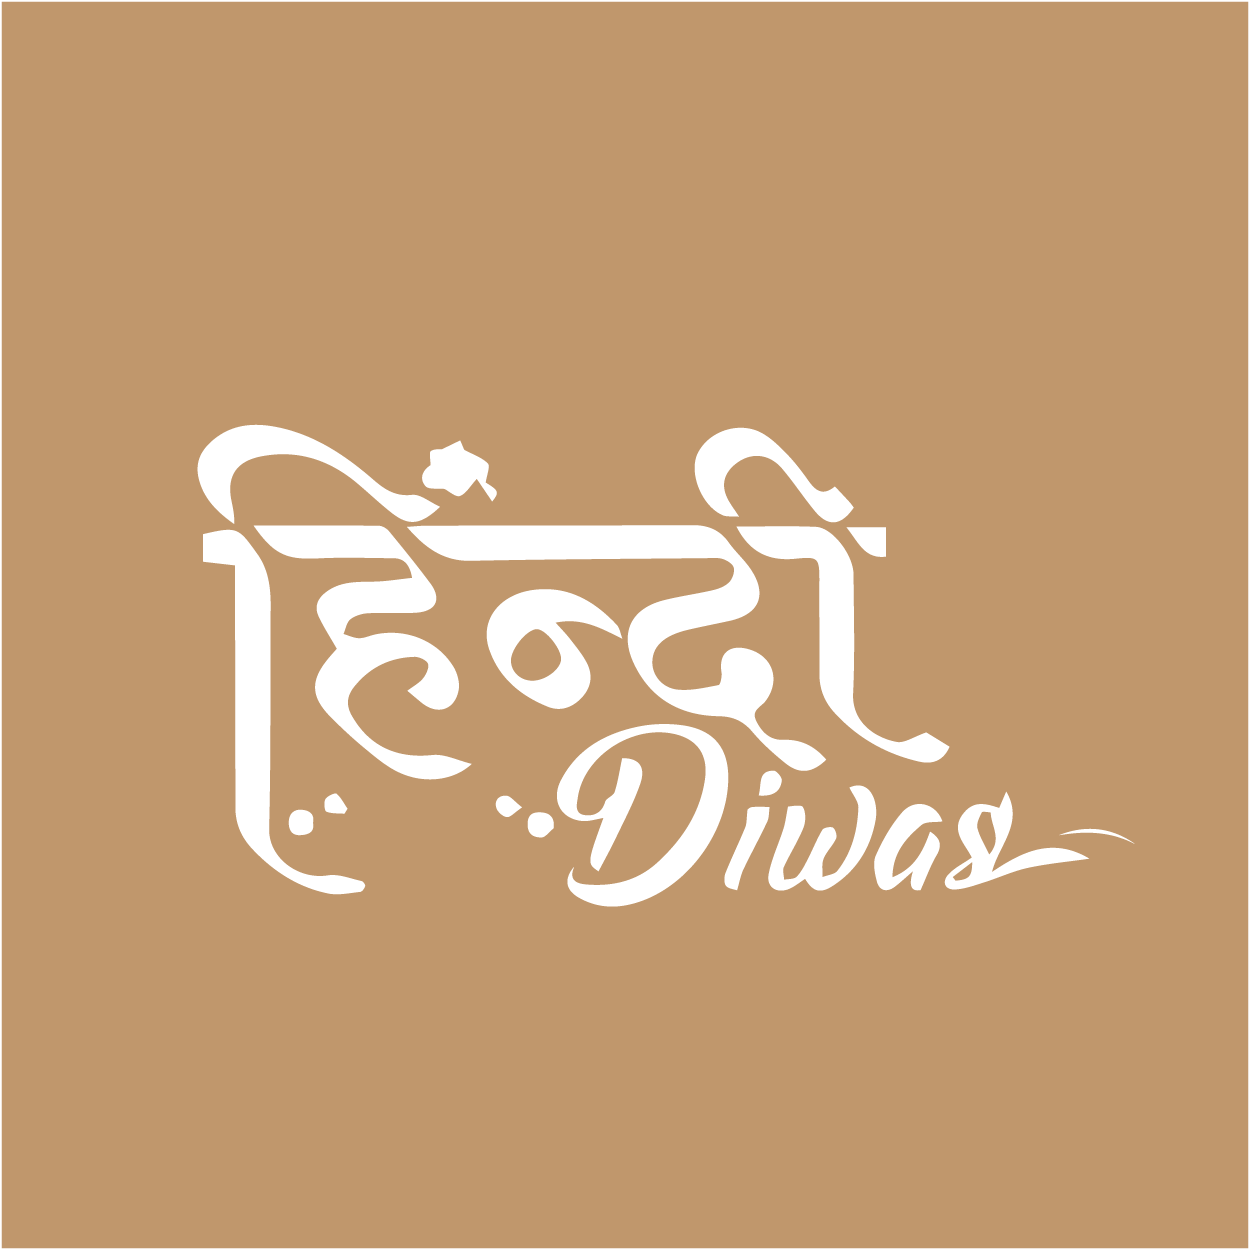 Hindi Diwas image